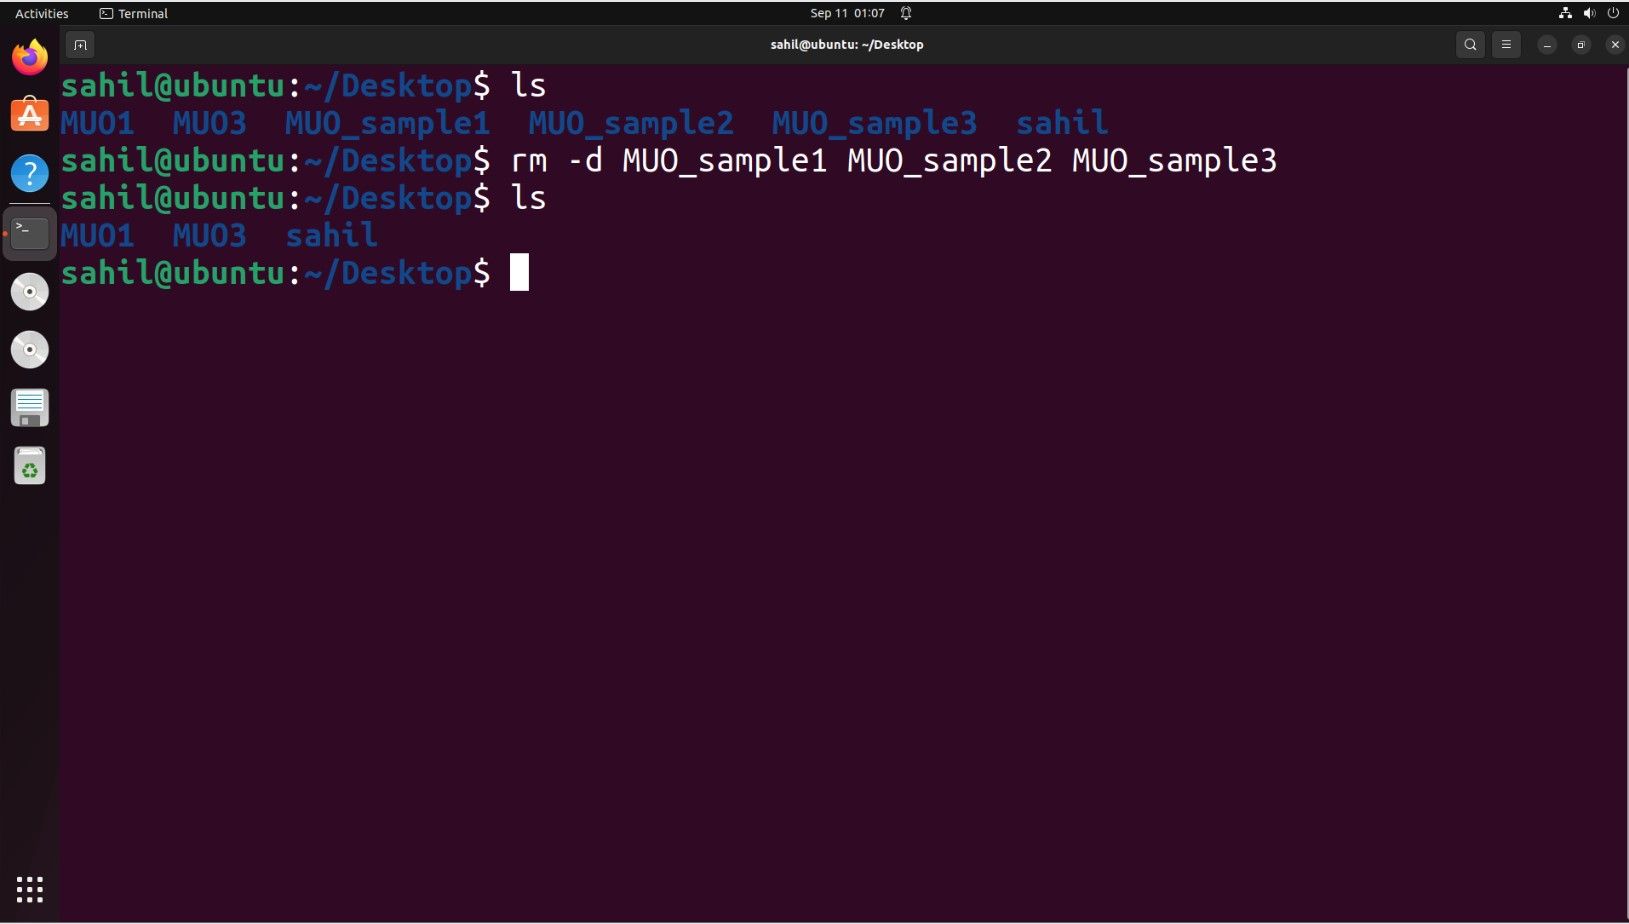   Janela do terminal Ubuntu com trechos de código para remover vários diretórios